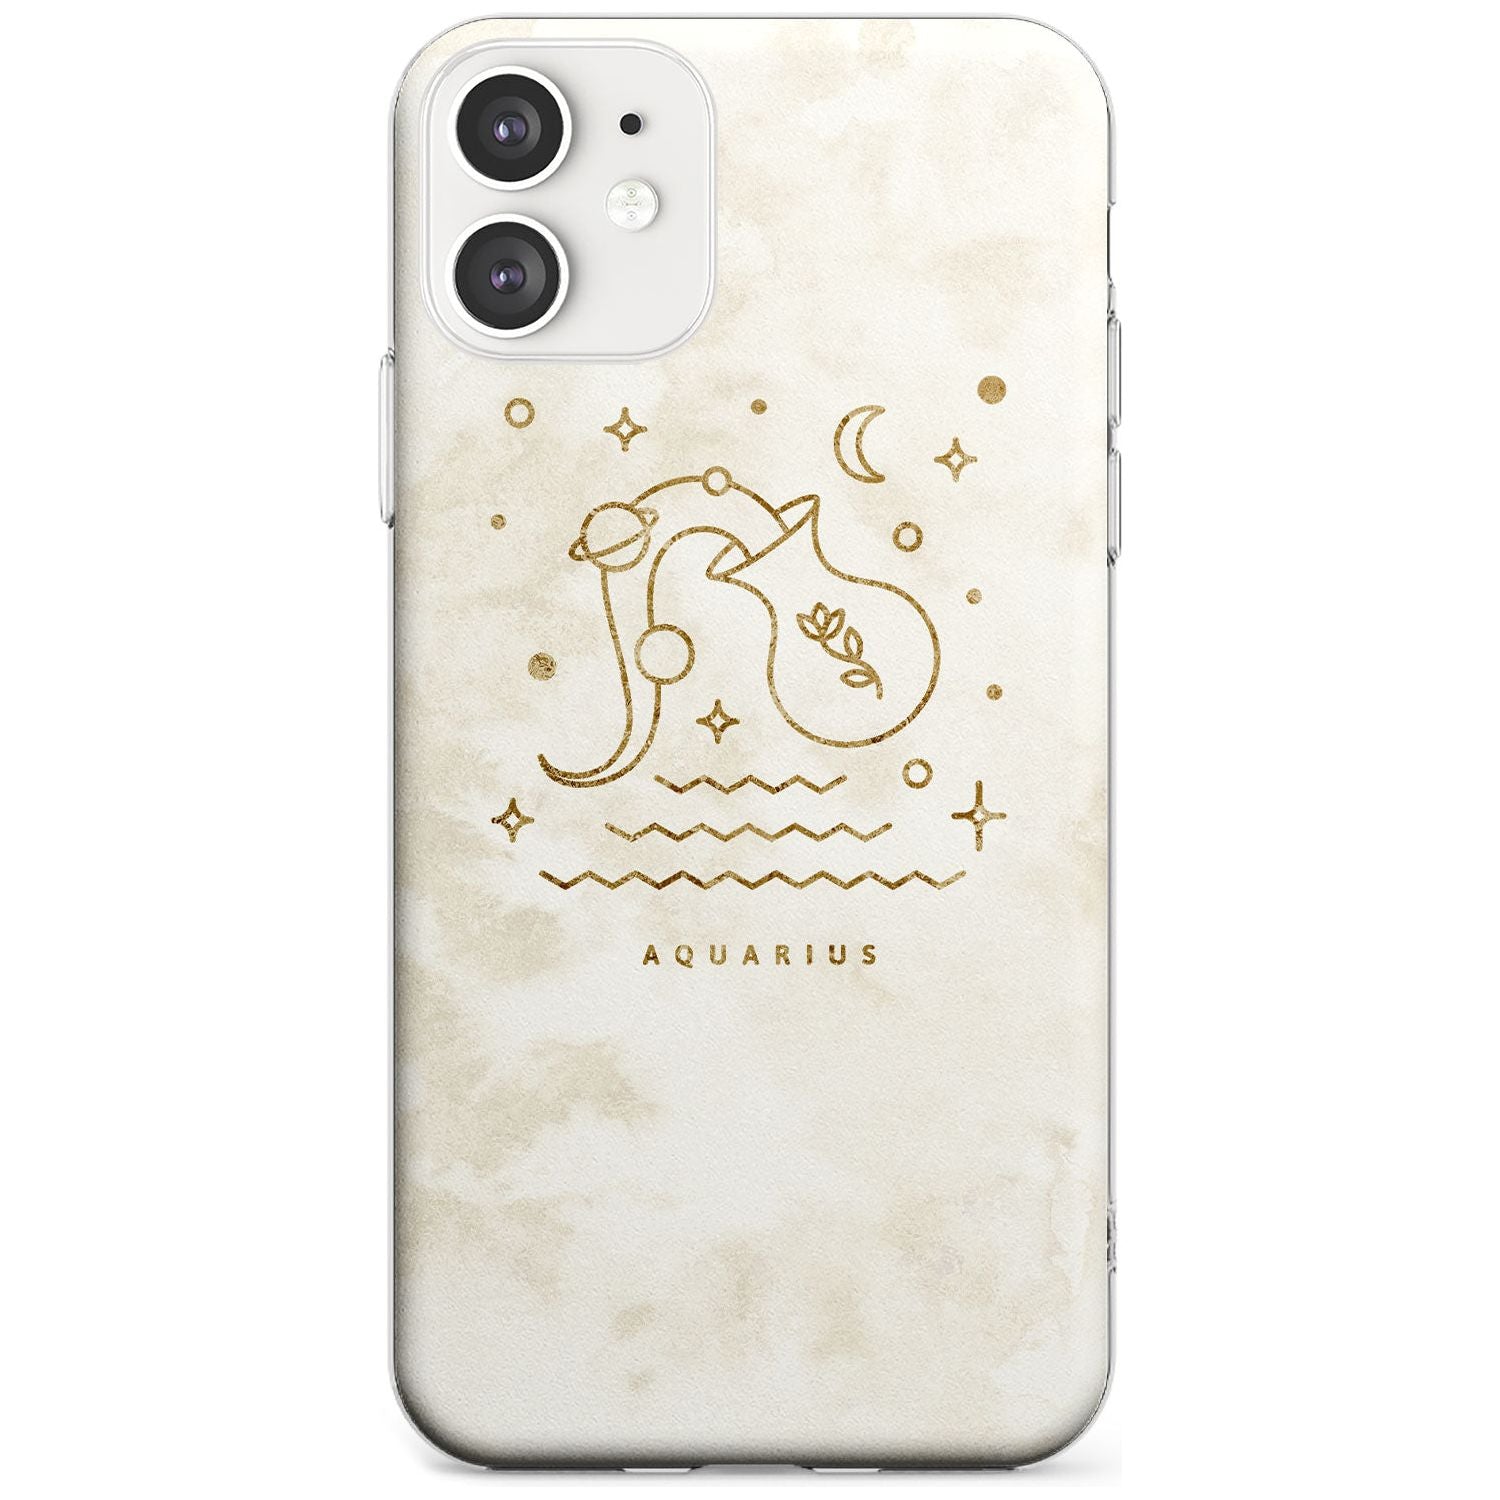 Aquarius Emblem - Solid Gold Marbled Design Slim TPU Phone Case for iPhone 11